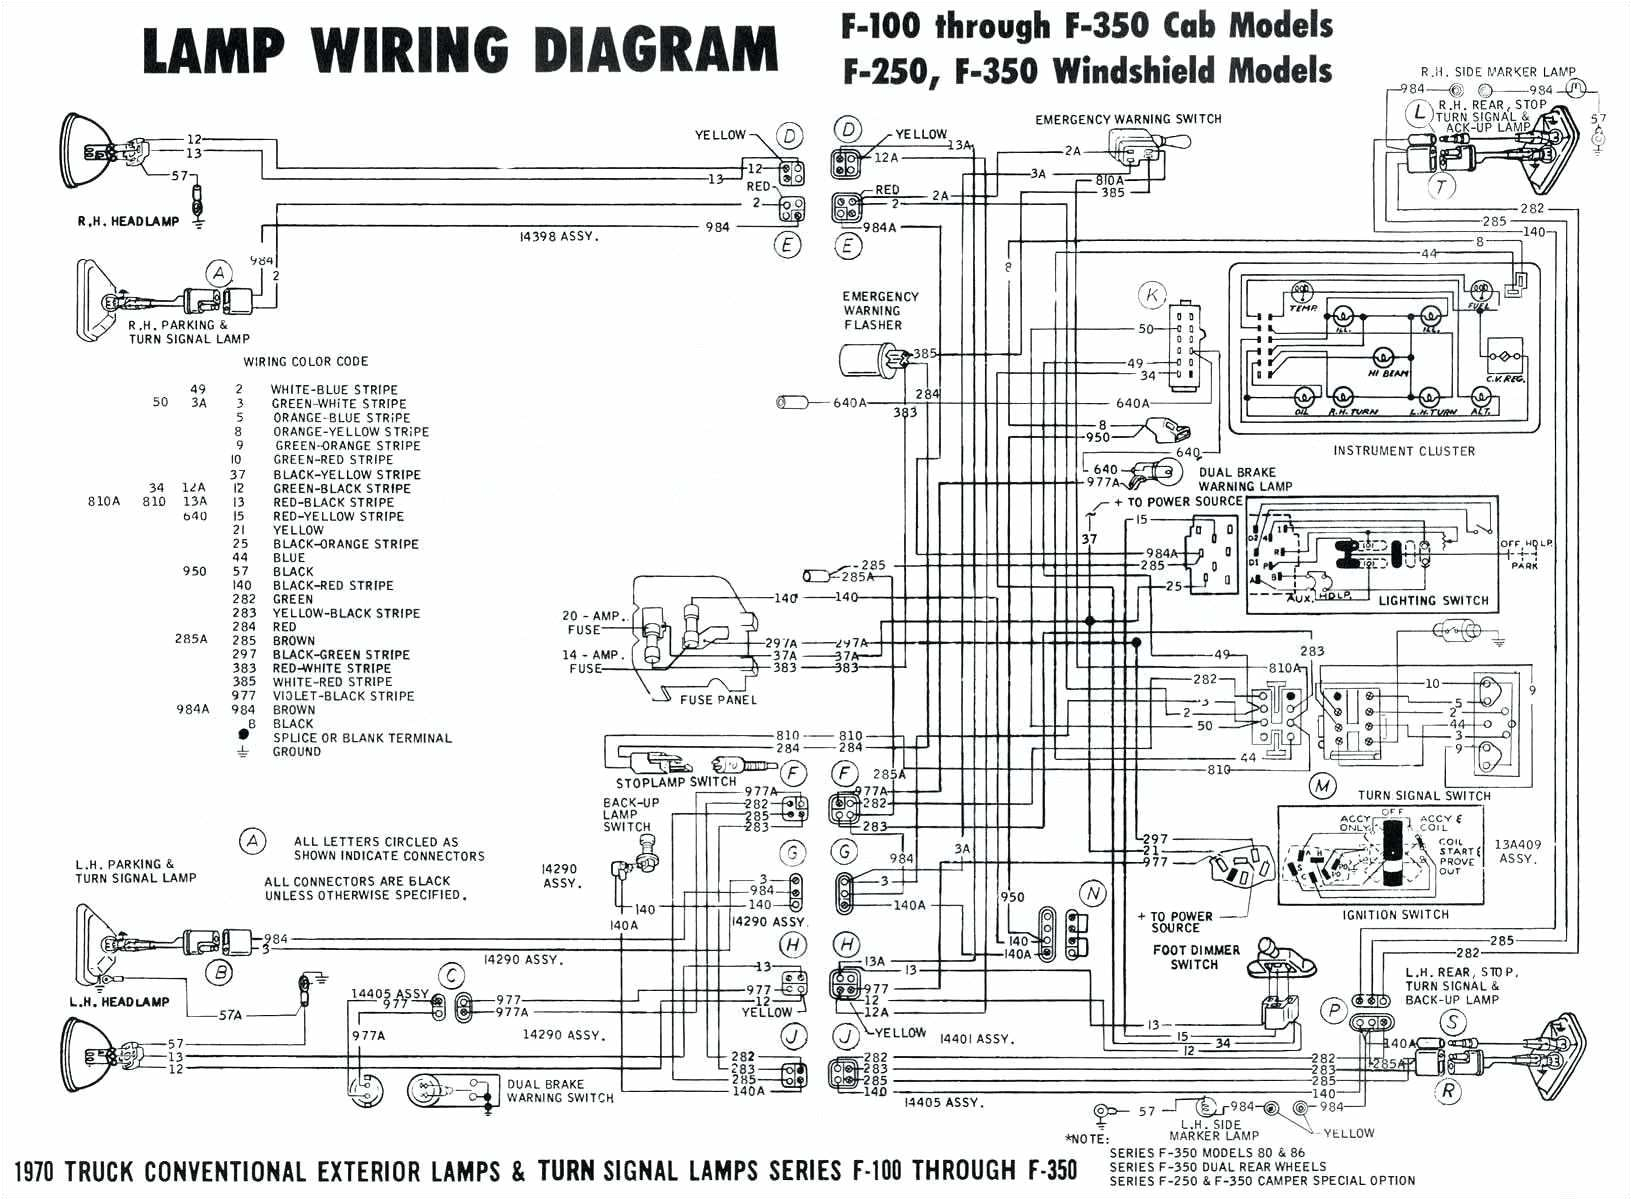 advanced wiring schematics wiring diagram database advance auto parts wiring diagrams advance wiring diagrams